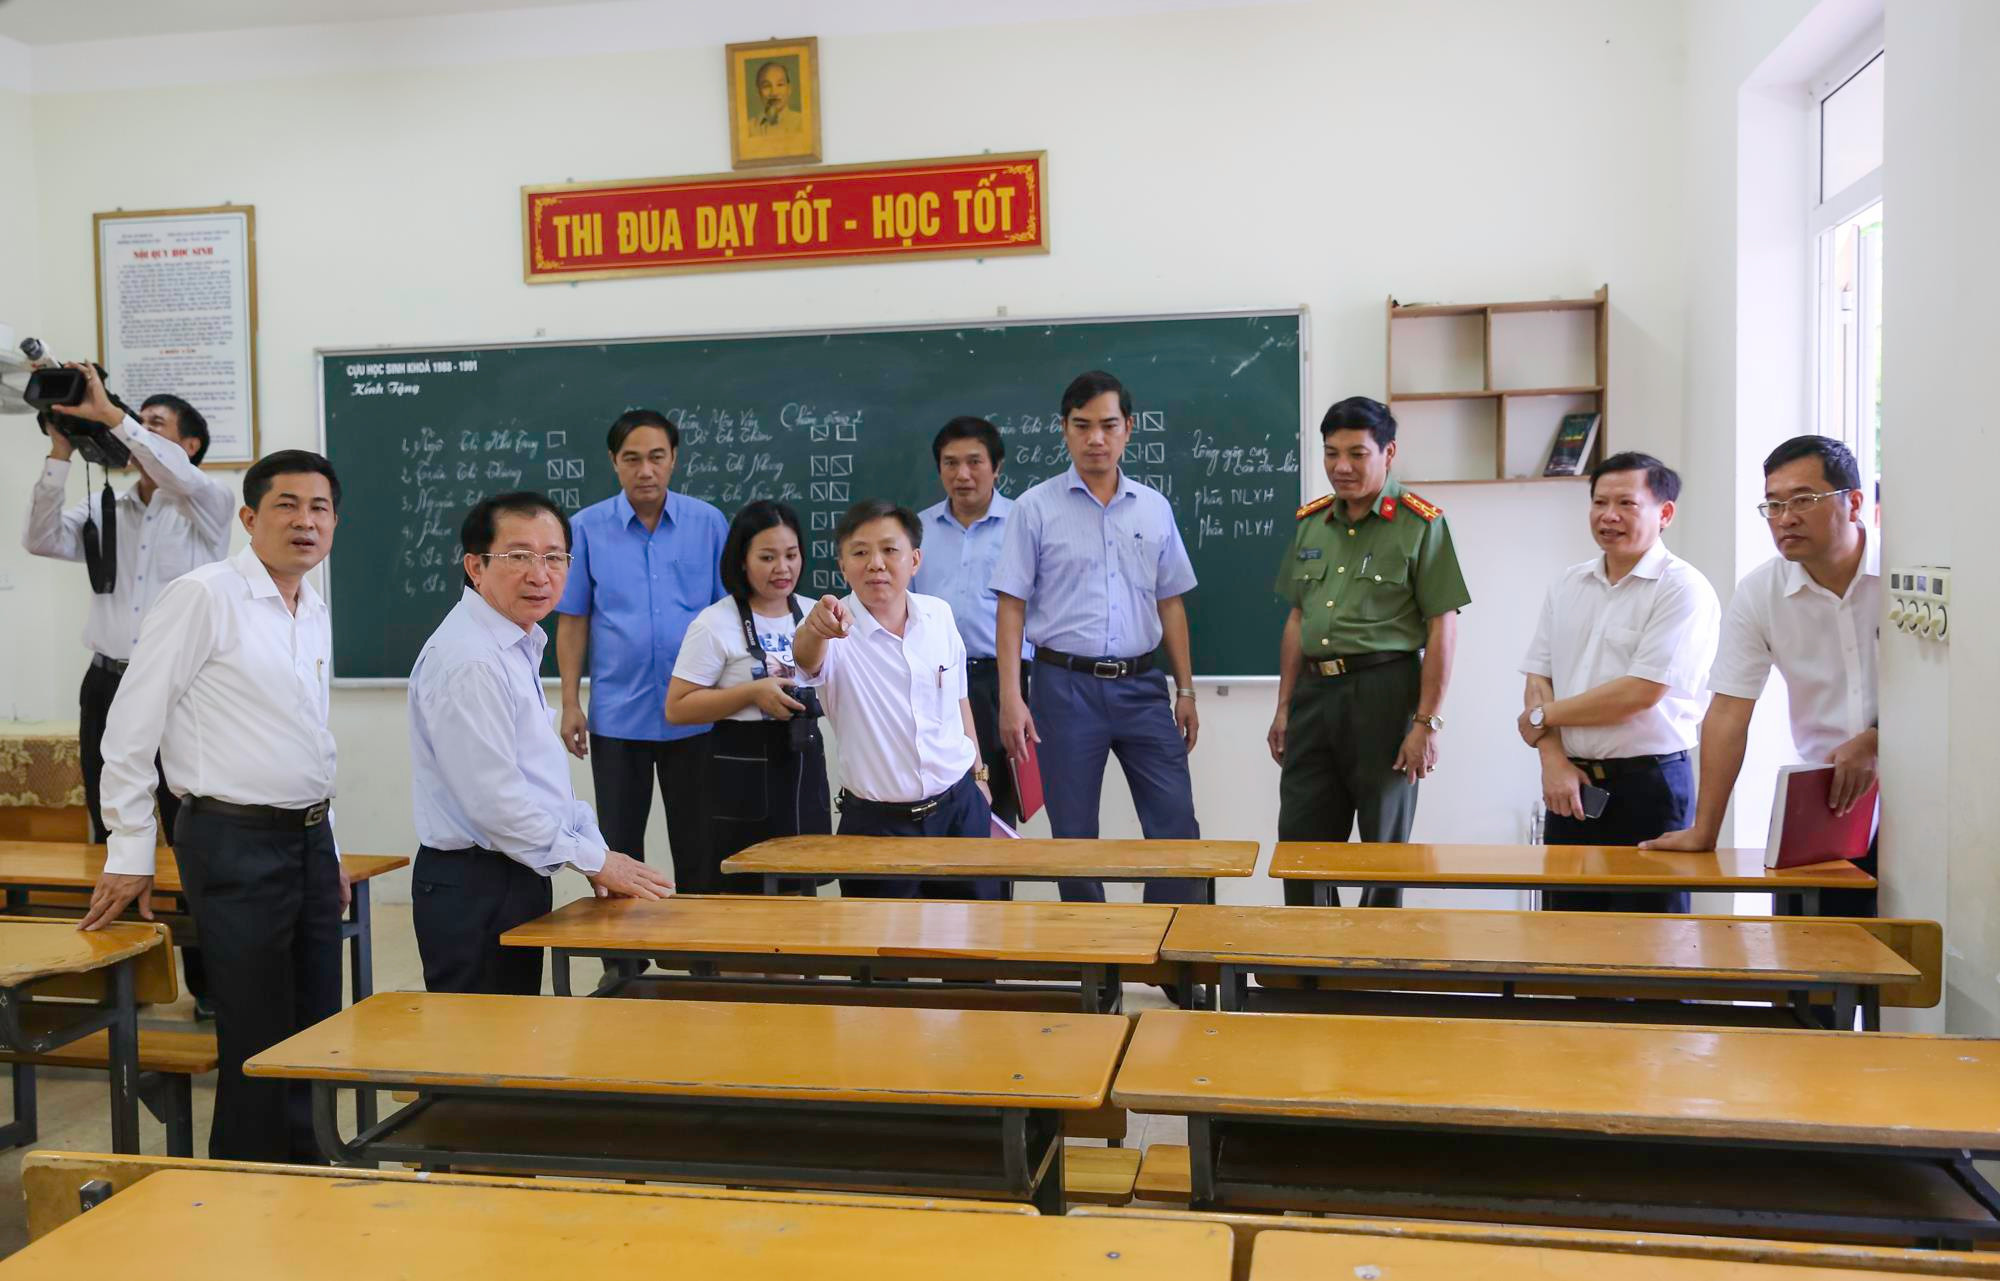 Kiểm tra phòng thi tại điểm thi Trường THPT Huỳnh Thúc Kháng. Ảnh: Đức Anh